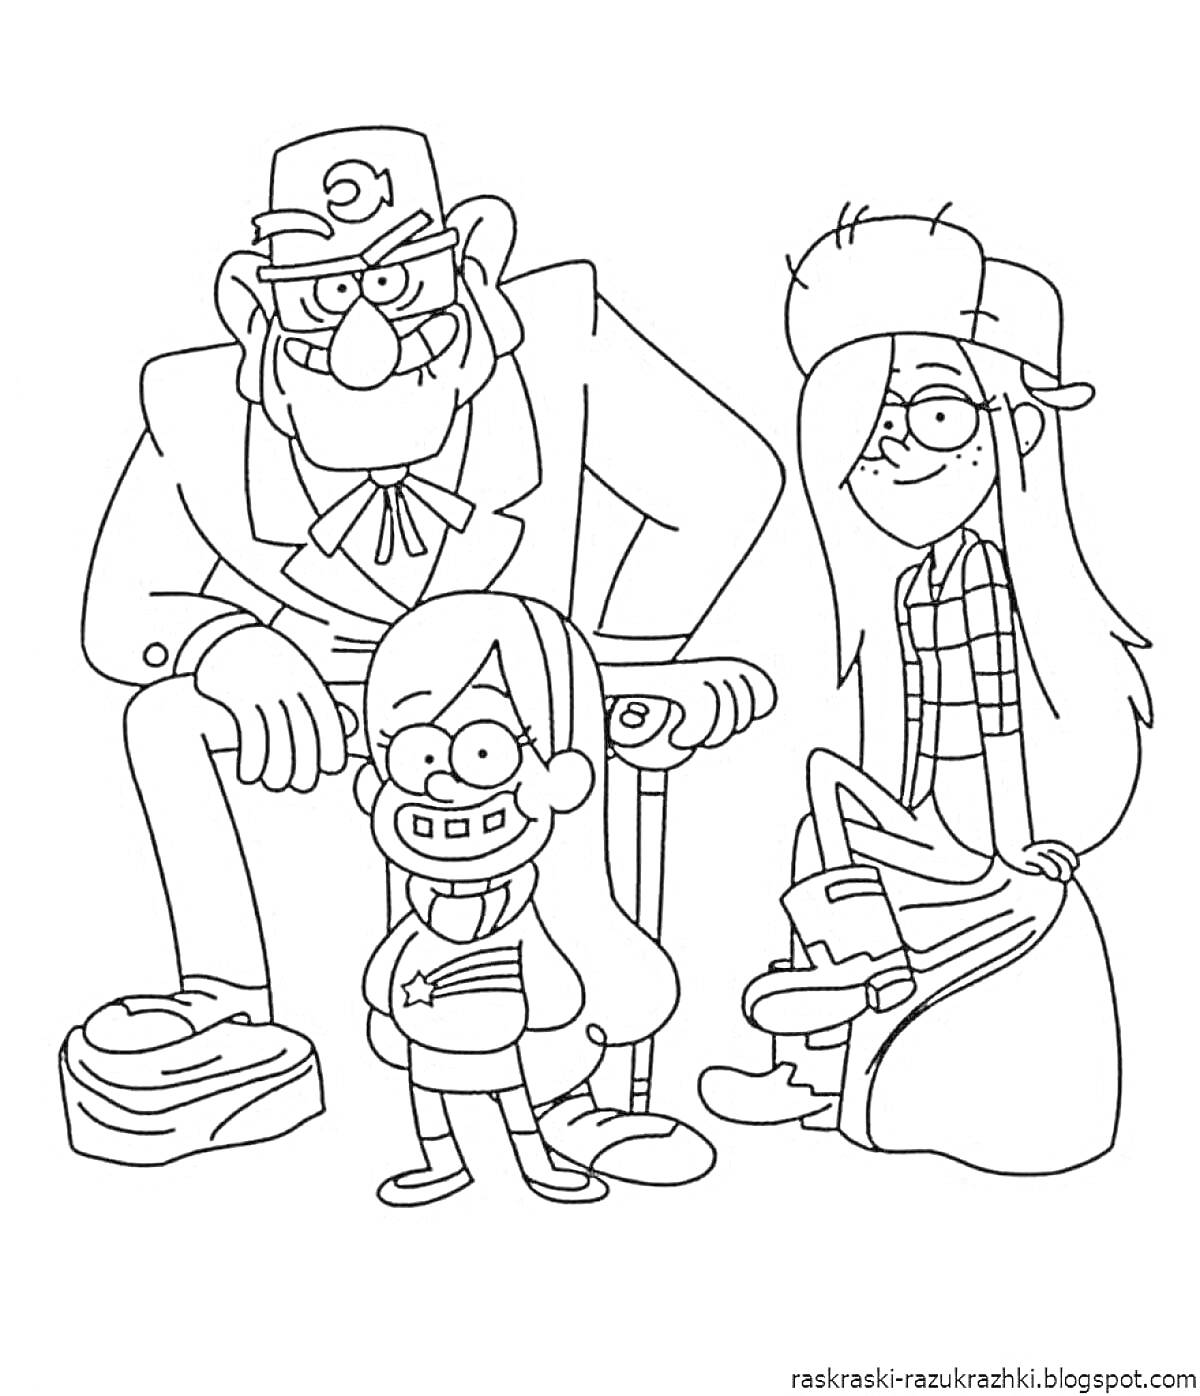 Раскраска три человека с различной внешностью из мультфильма 